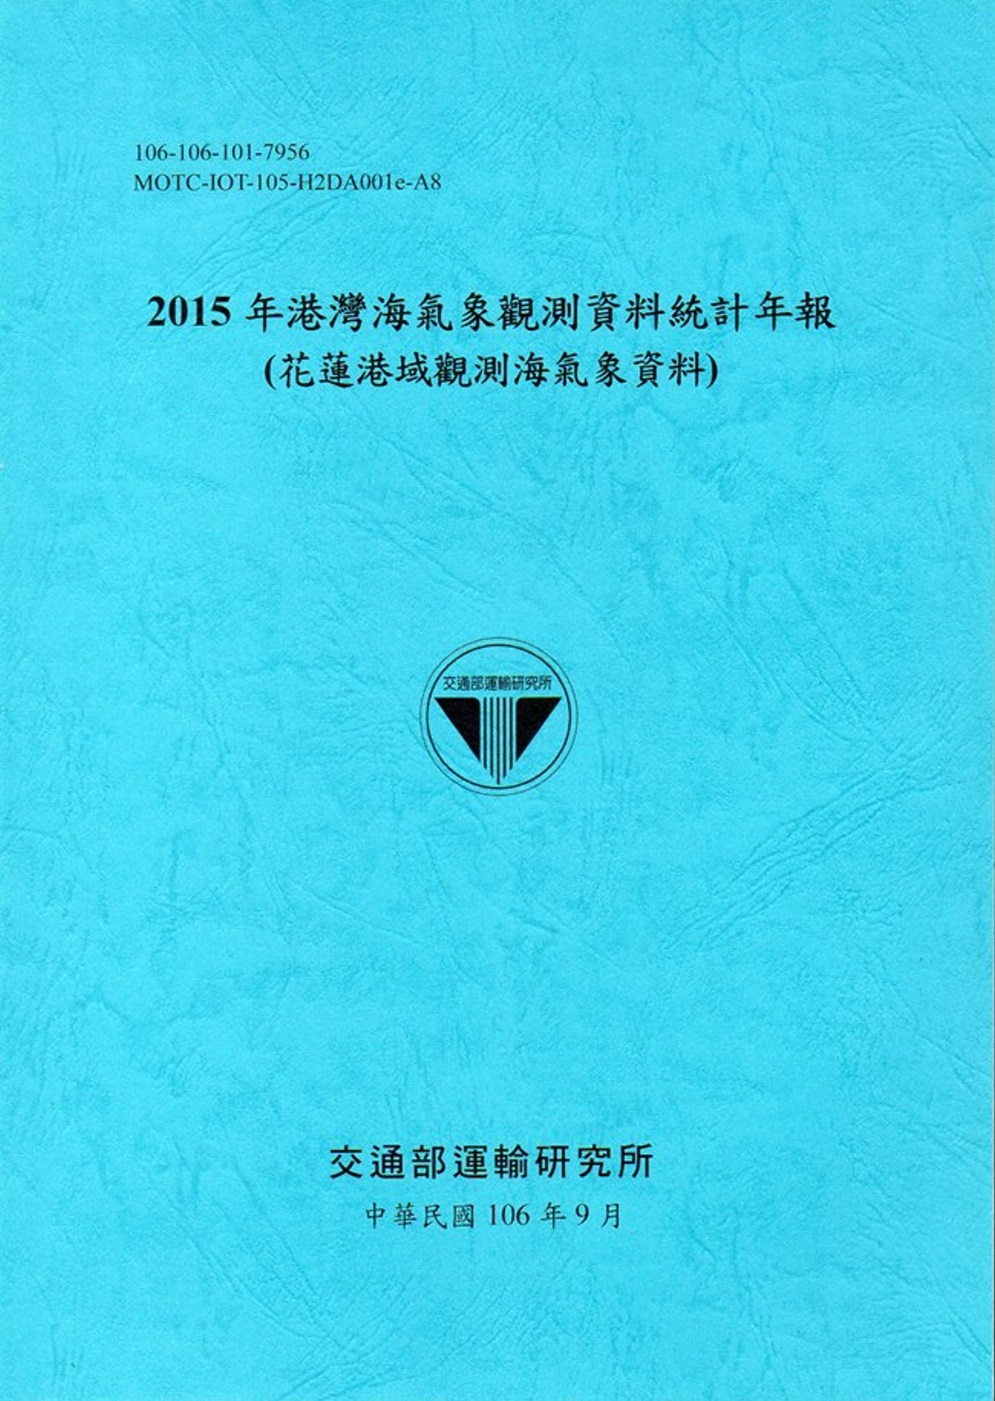 2015年港灣海氣象觀測資料統計年報(花蓮港域觀測海氣象資料)106深藍